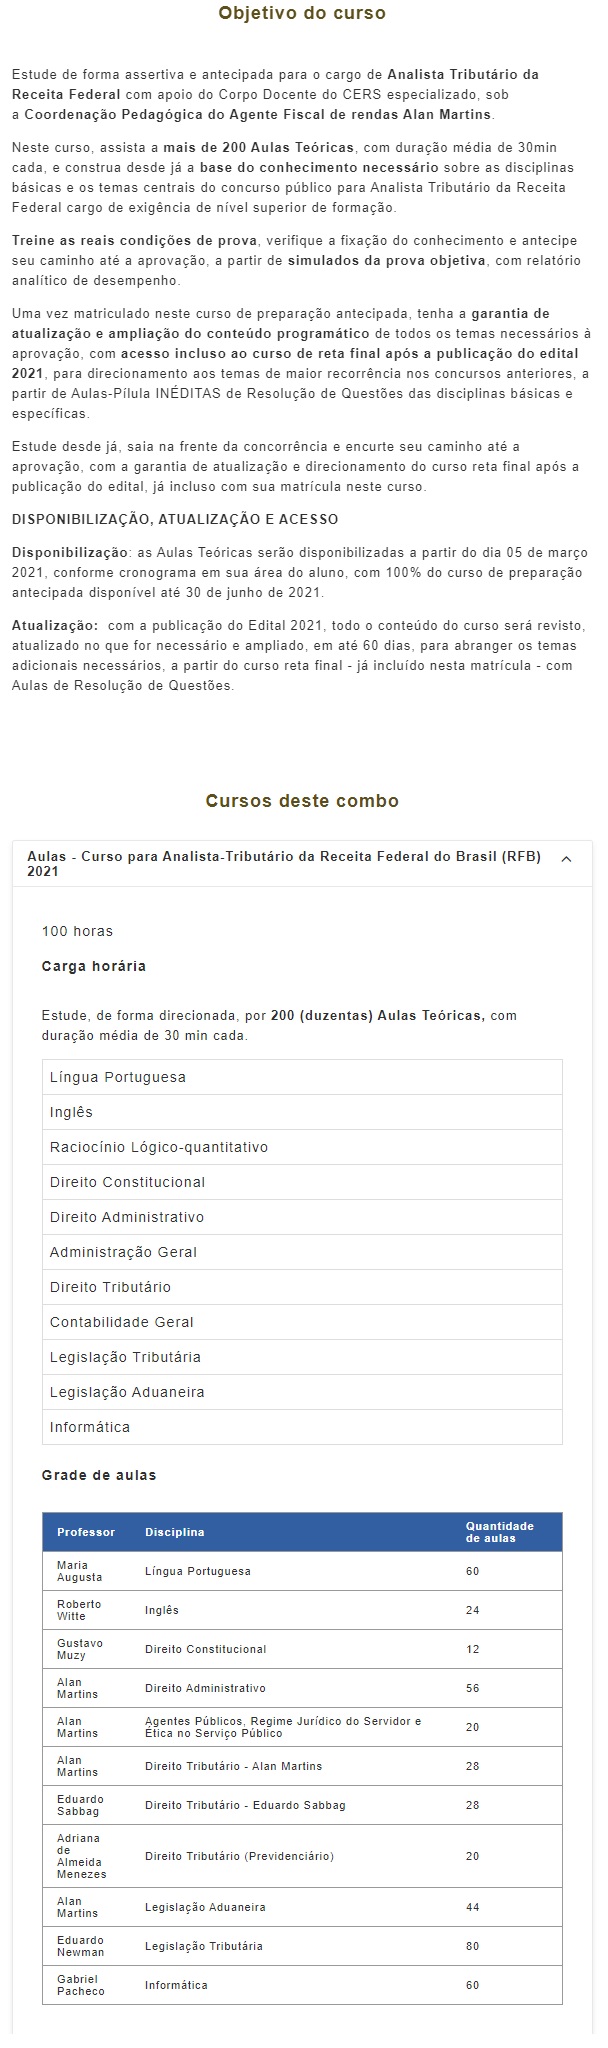 RFB - Analista Tributário (CERS 2021) Receita Federal Brasileira 4